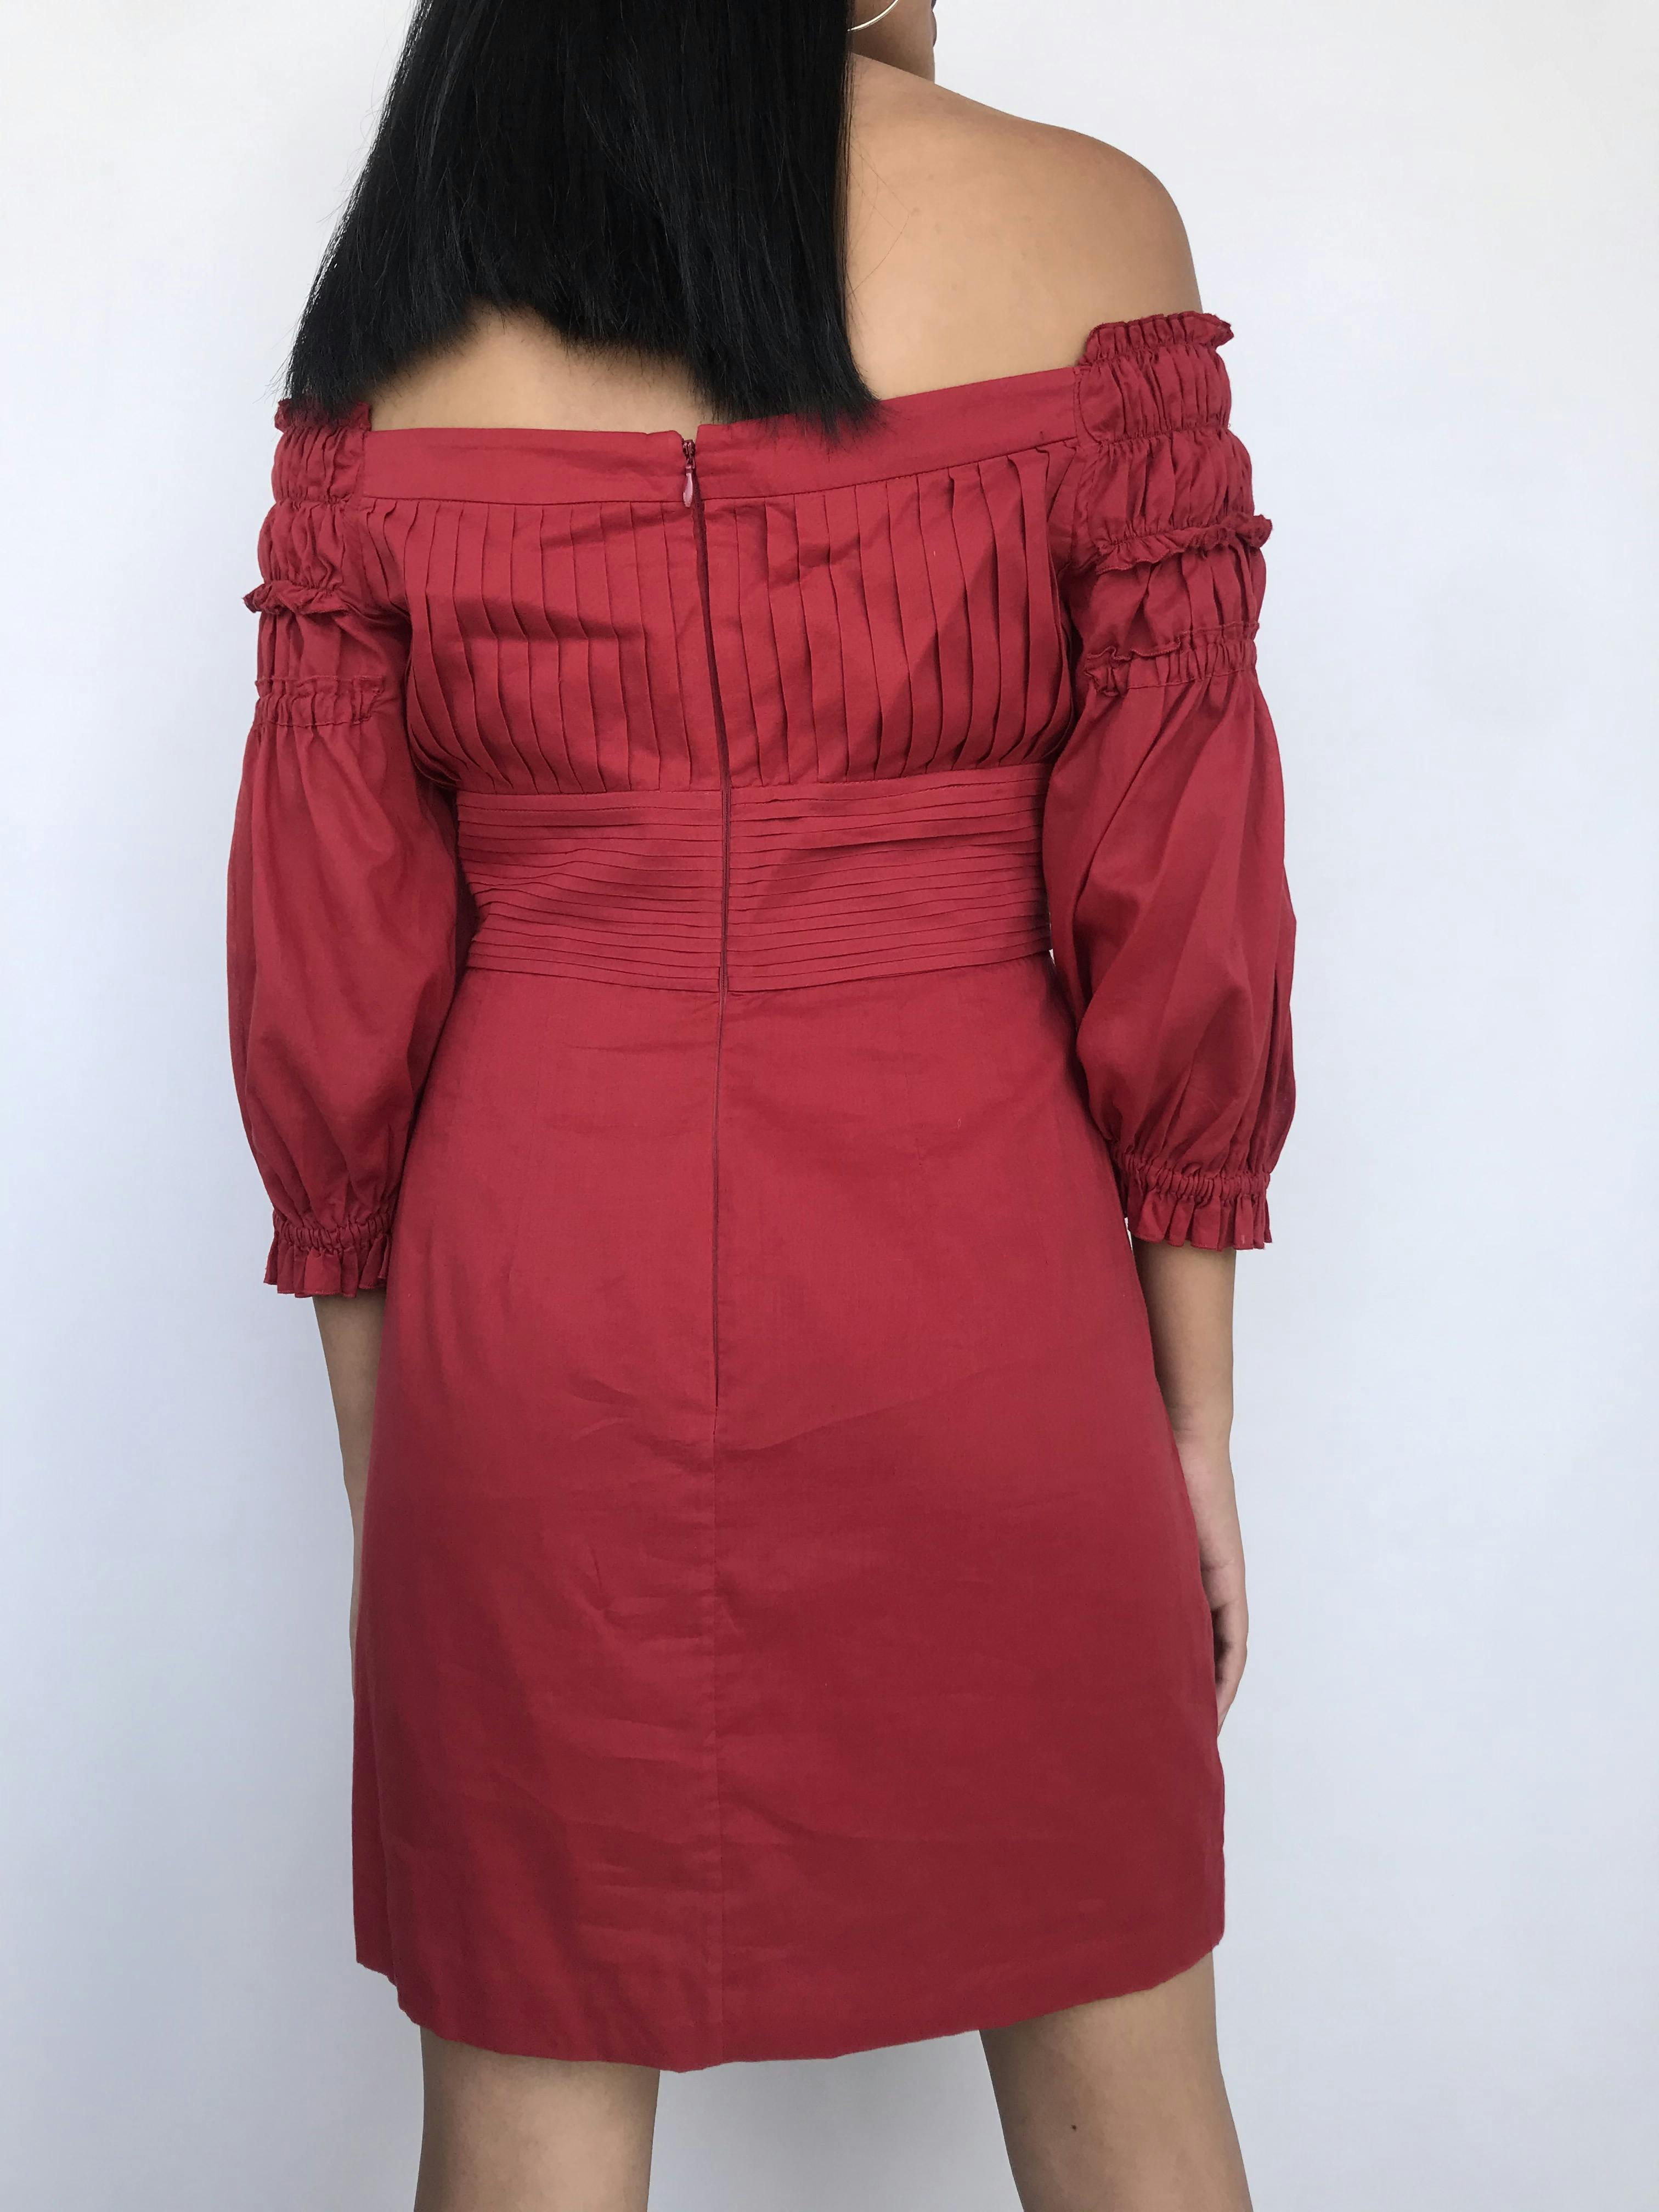 Vestido Catherine Malandrino, 100% algodón rojo ladrillo, con pliegues en pecho y espalda, off shoulder con mangas abullonadas, falda con bolsillo y doble tela tipo forro. Precio original S/ 400Talla S (6)